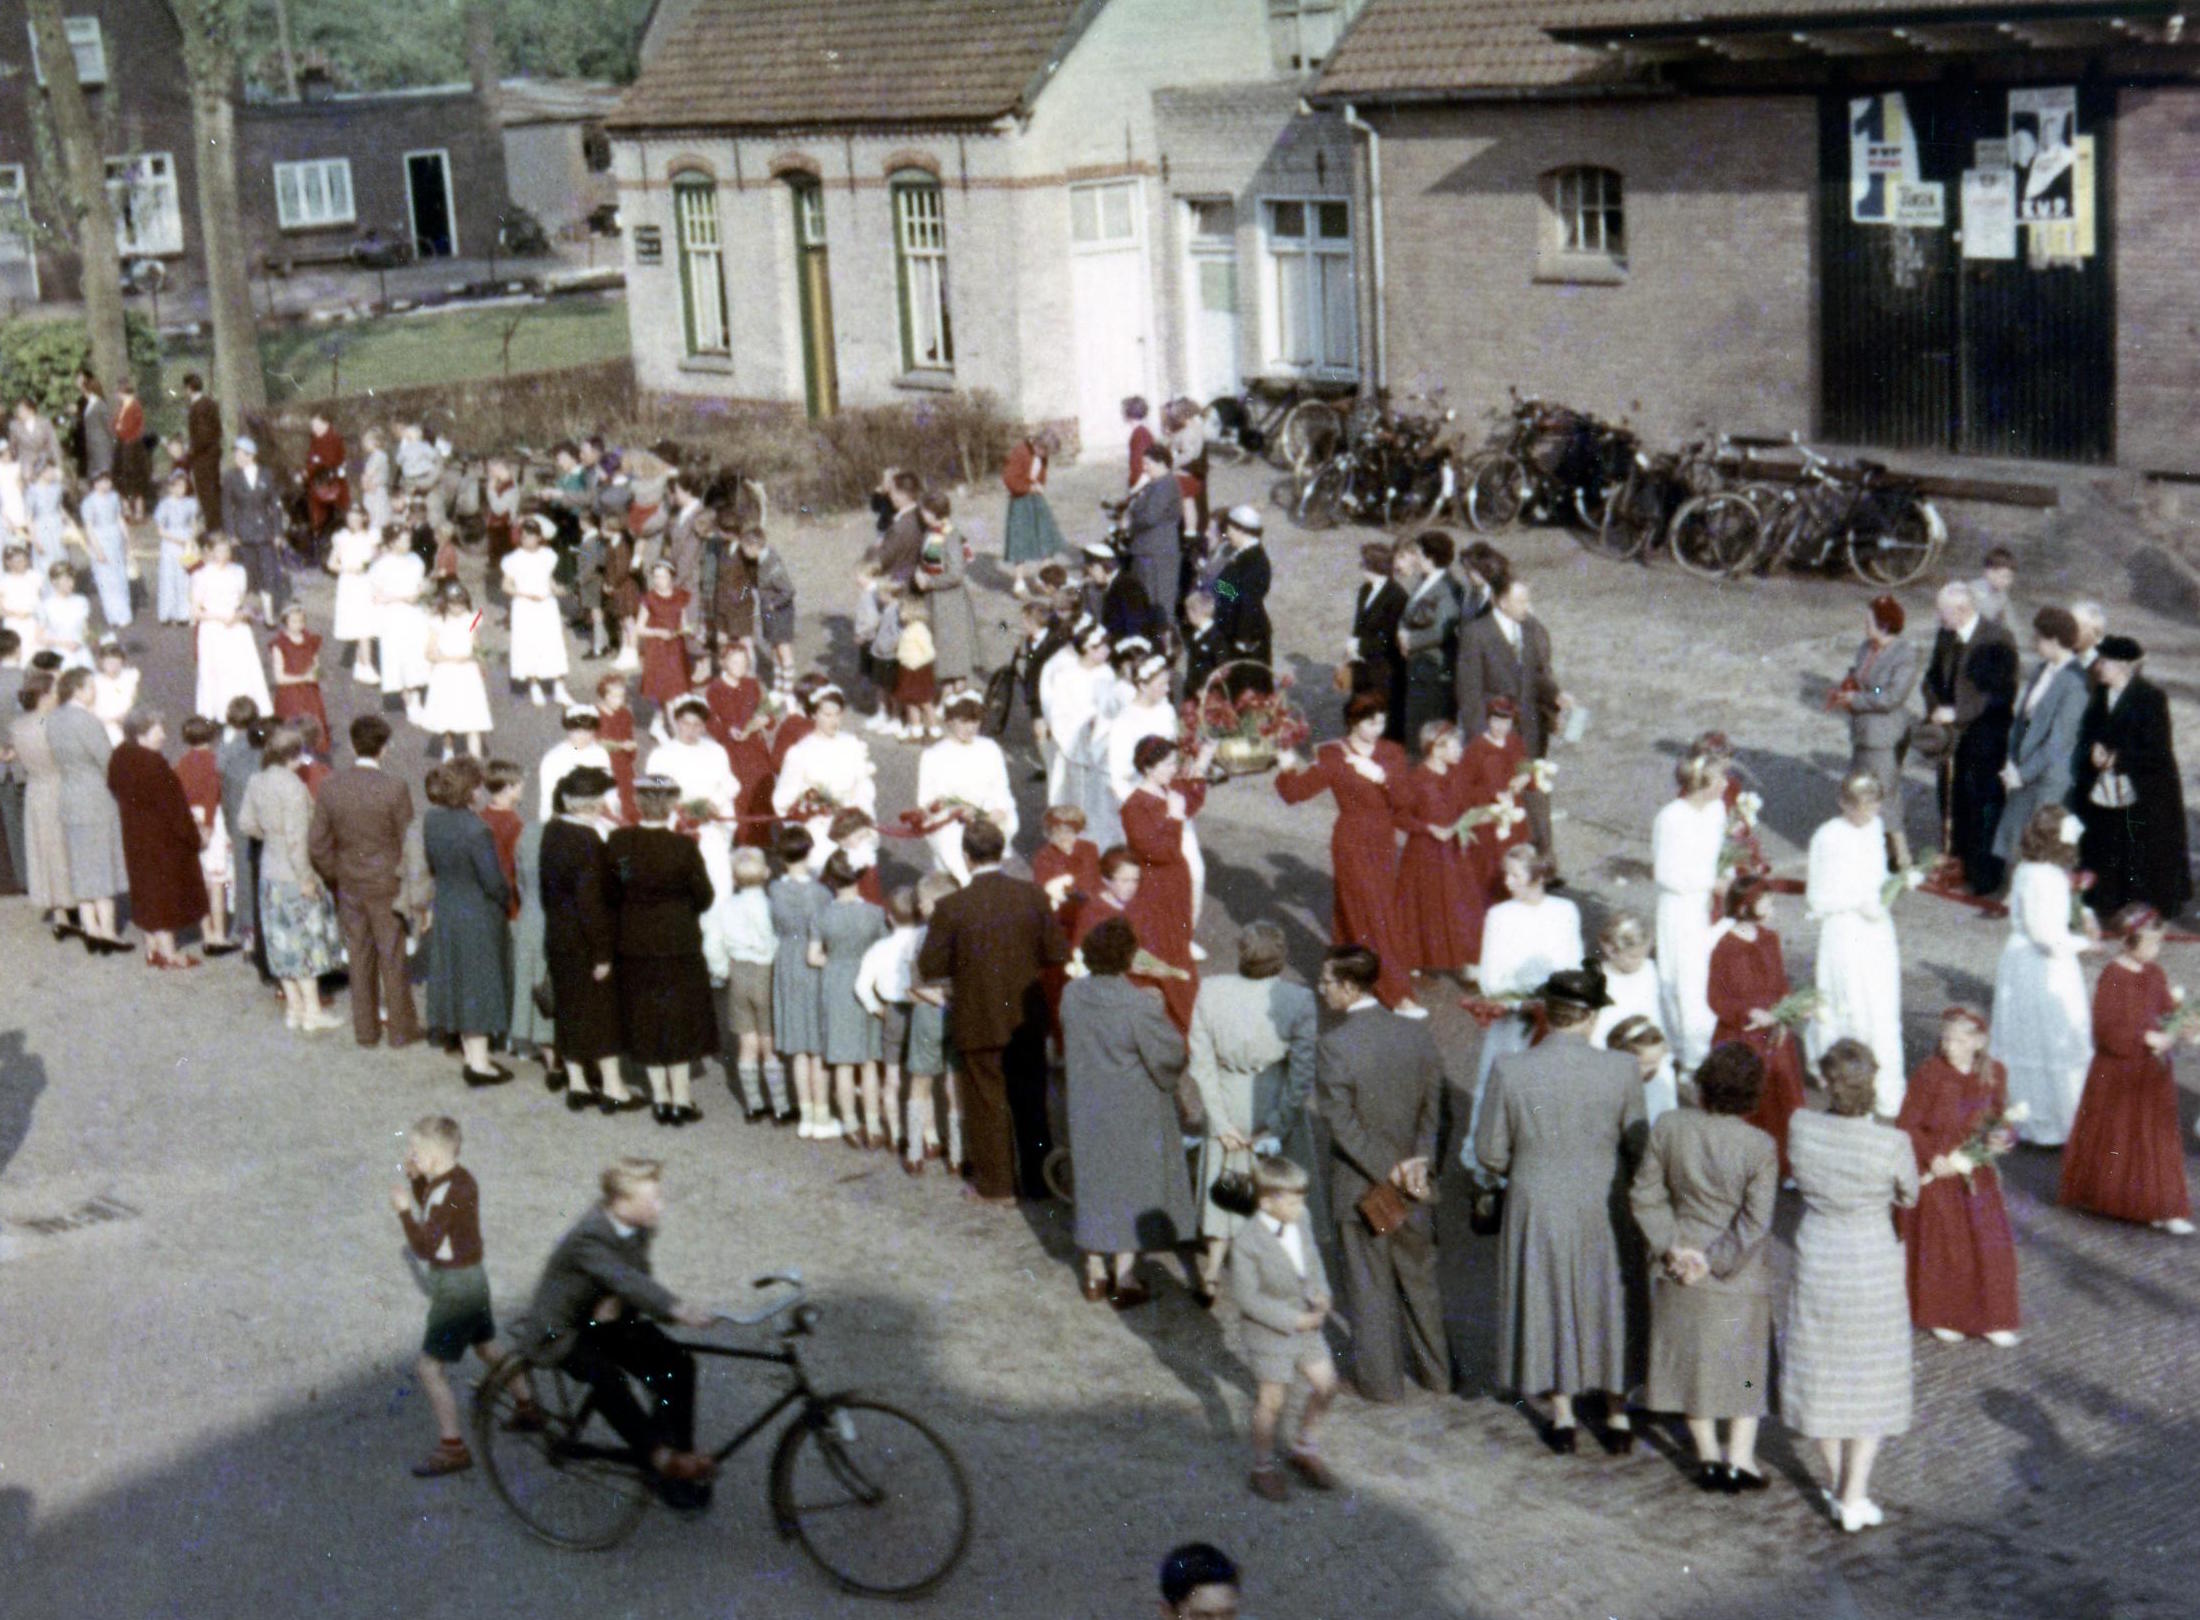 1956. De Maria-omgang trekt voorbij door de Dorpsstraat. Rechts het Boerenbondsgebouw met verkiezingsposters uit 1956 (foto: Noud van de Ven)